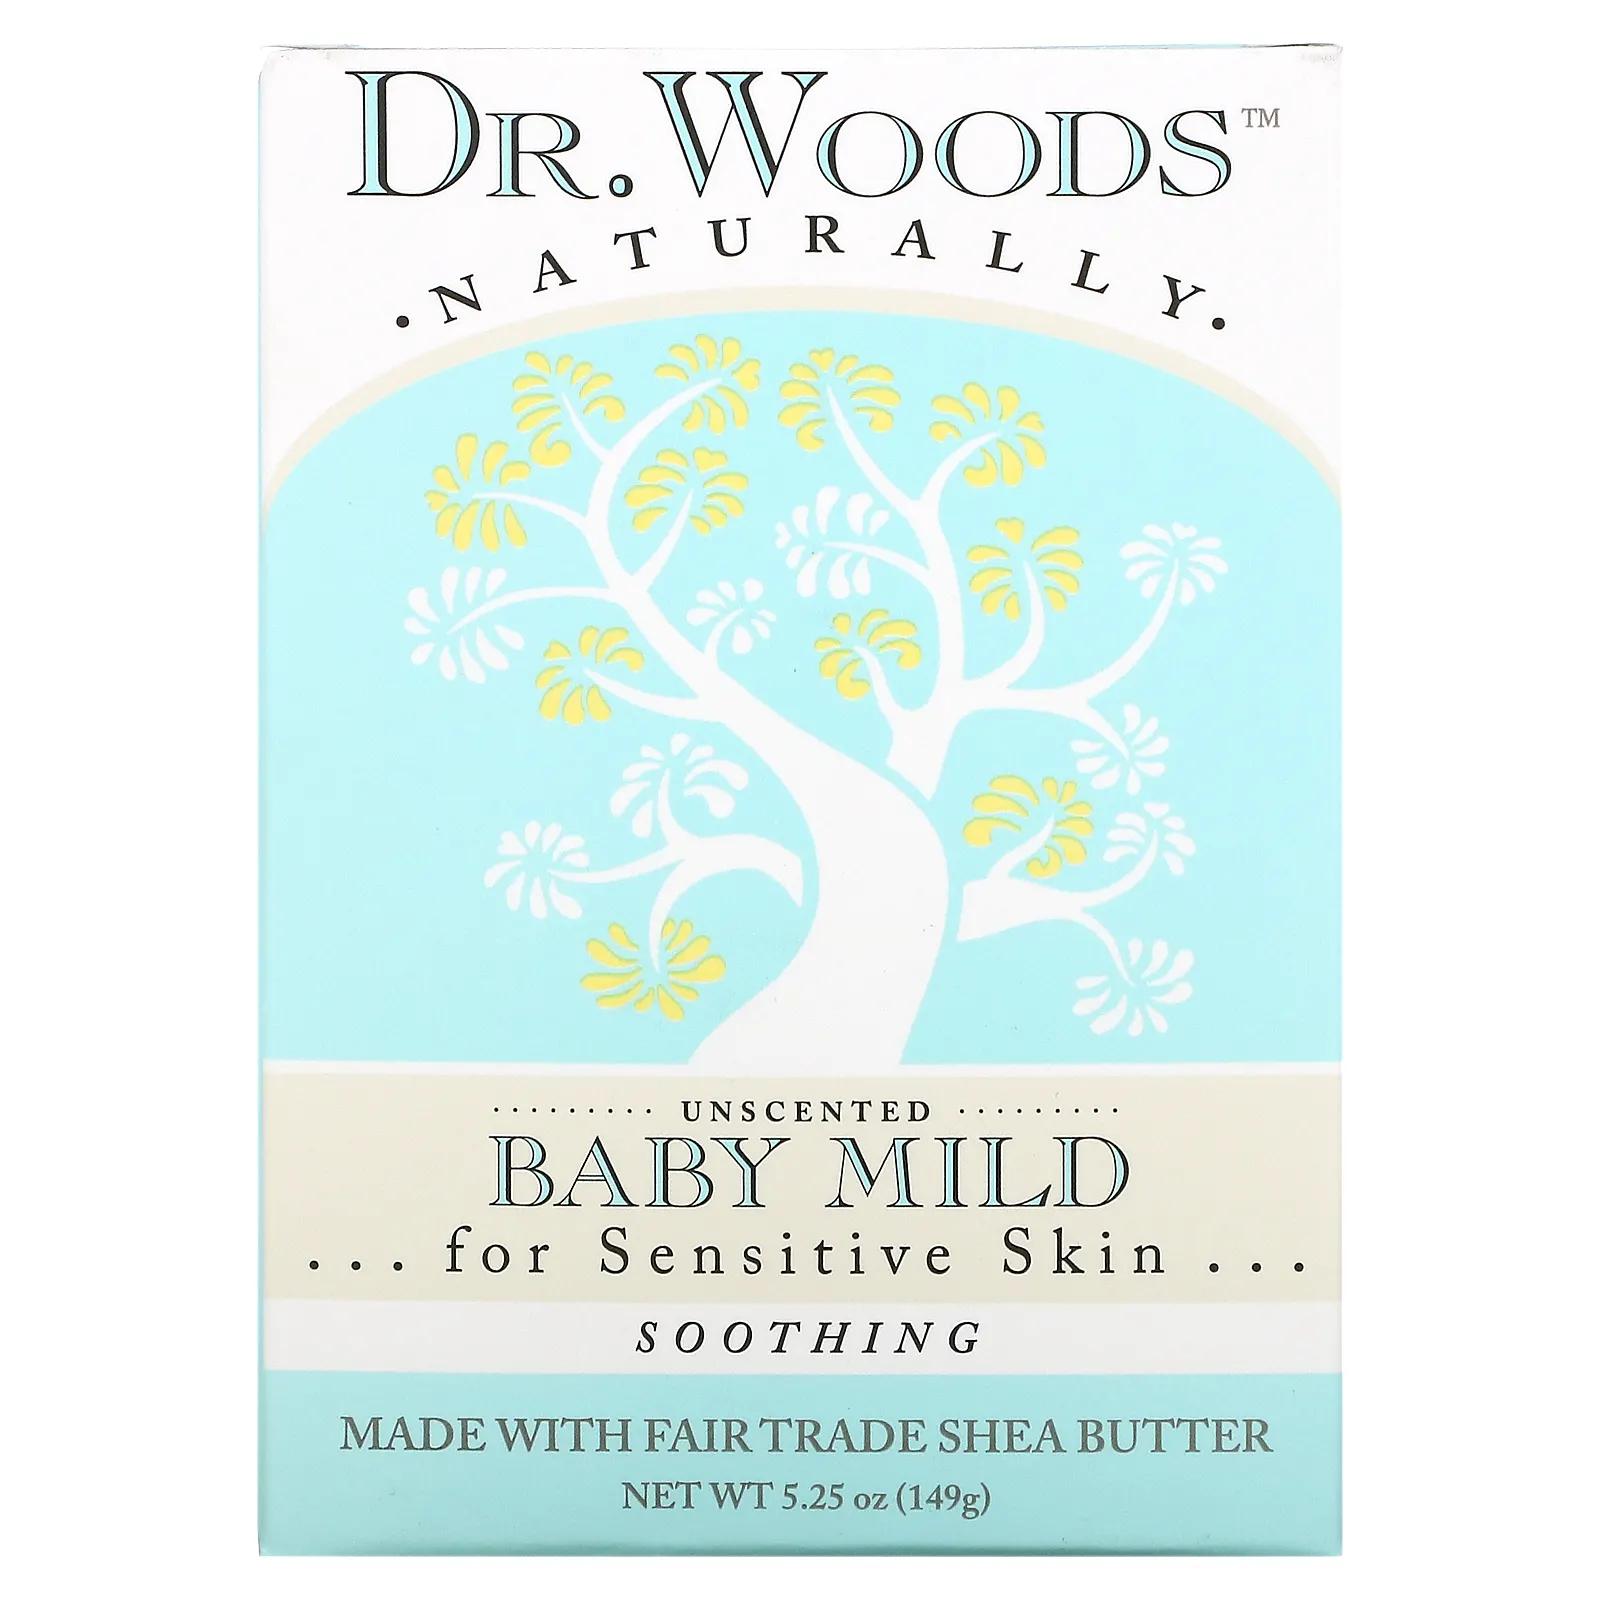 Dr. Woods Детское мягкое кастильское мыло без отдушек 5,25 унций (149 г) dr woods брусковое мыло имбирь и цитрус 149 г 5 25 унции